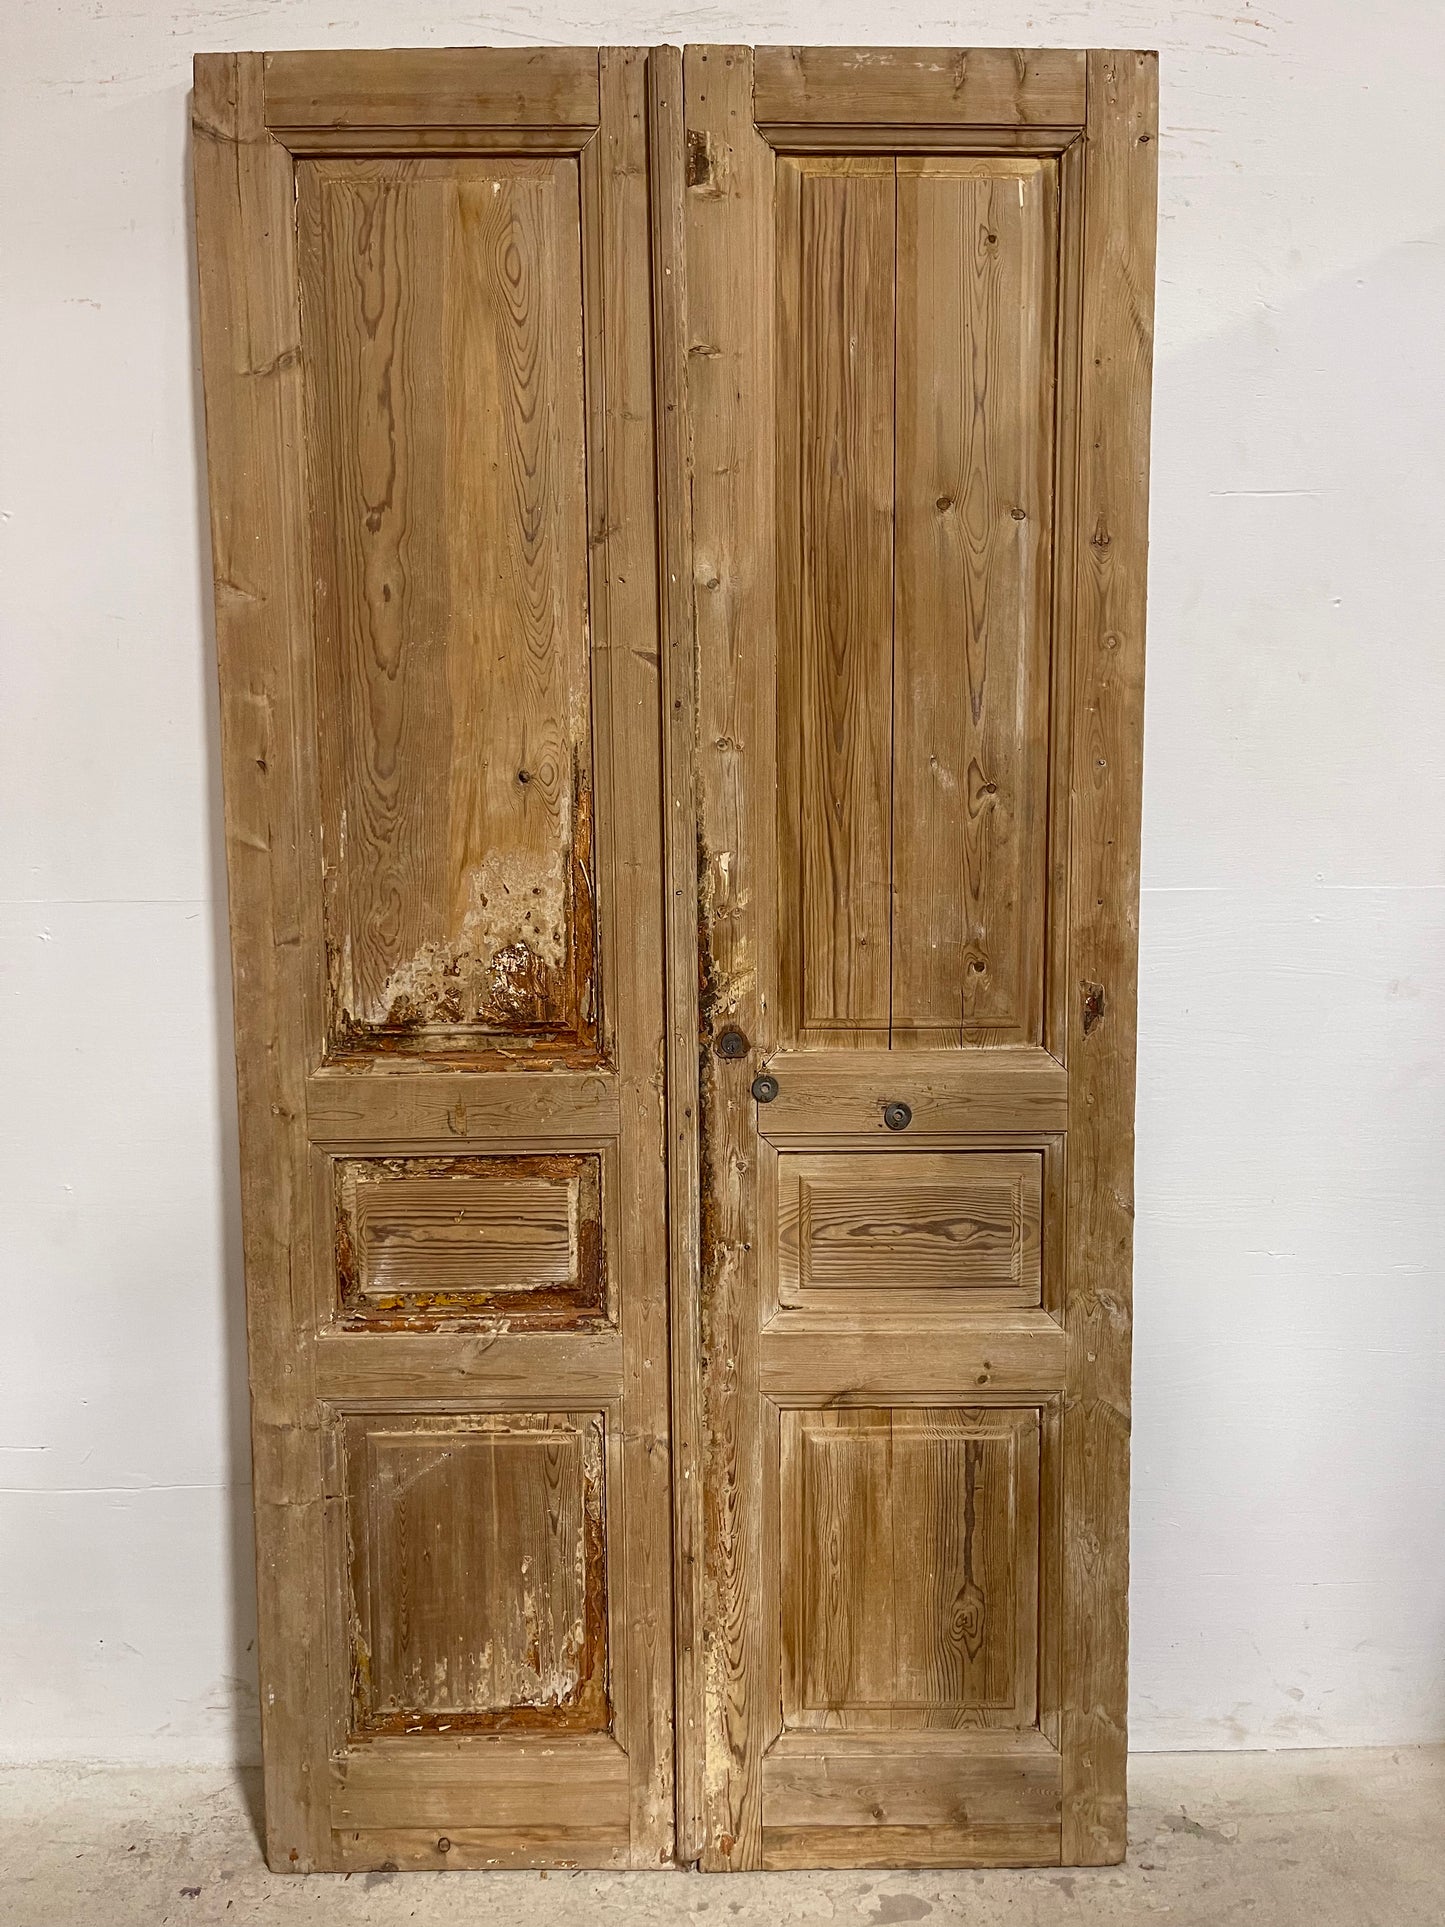 Antique French panel Doors (86x43.5) J648